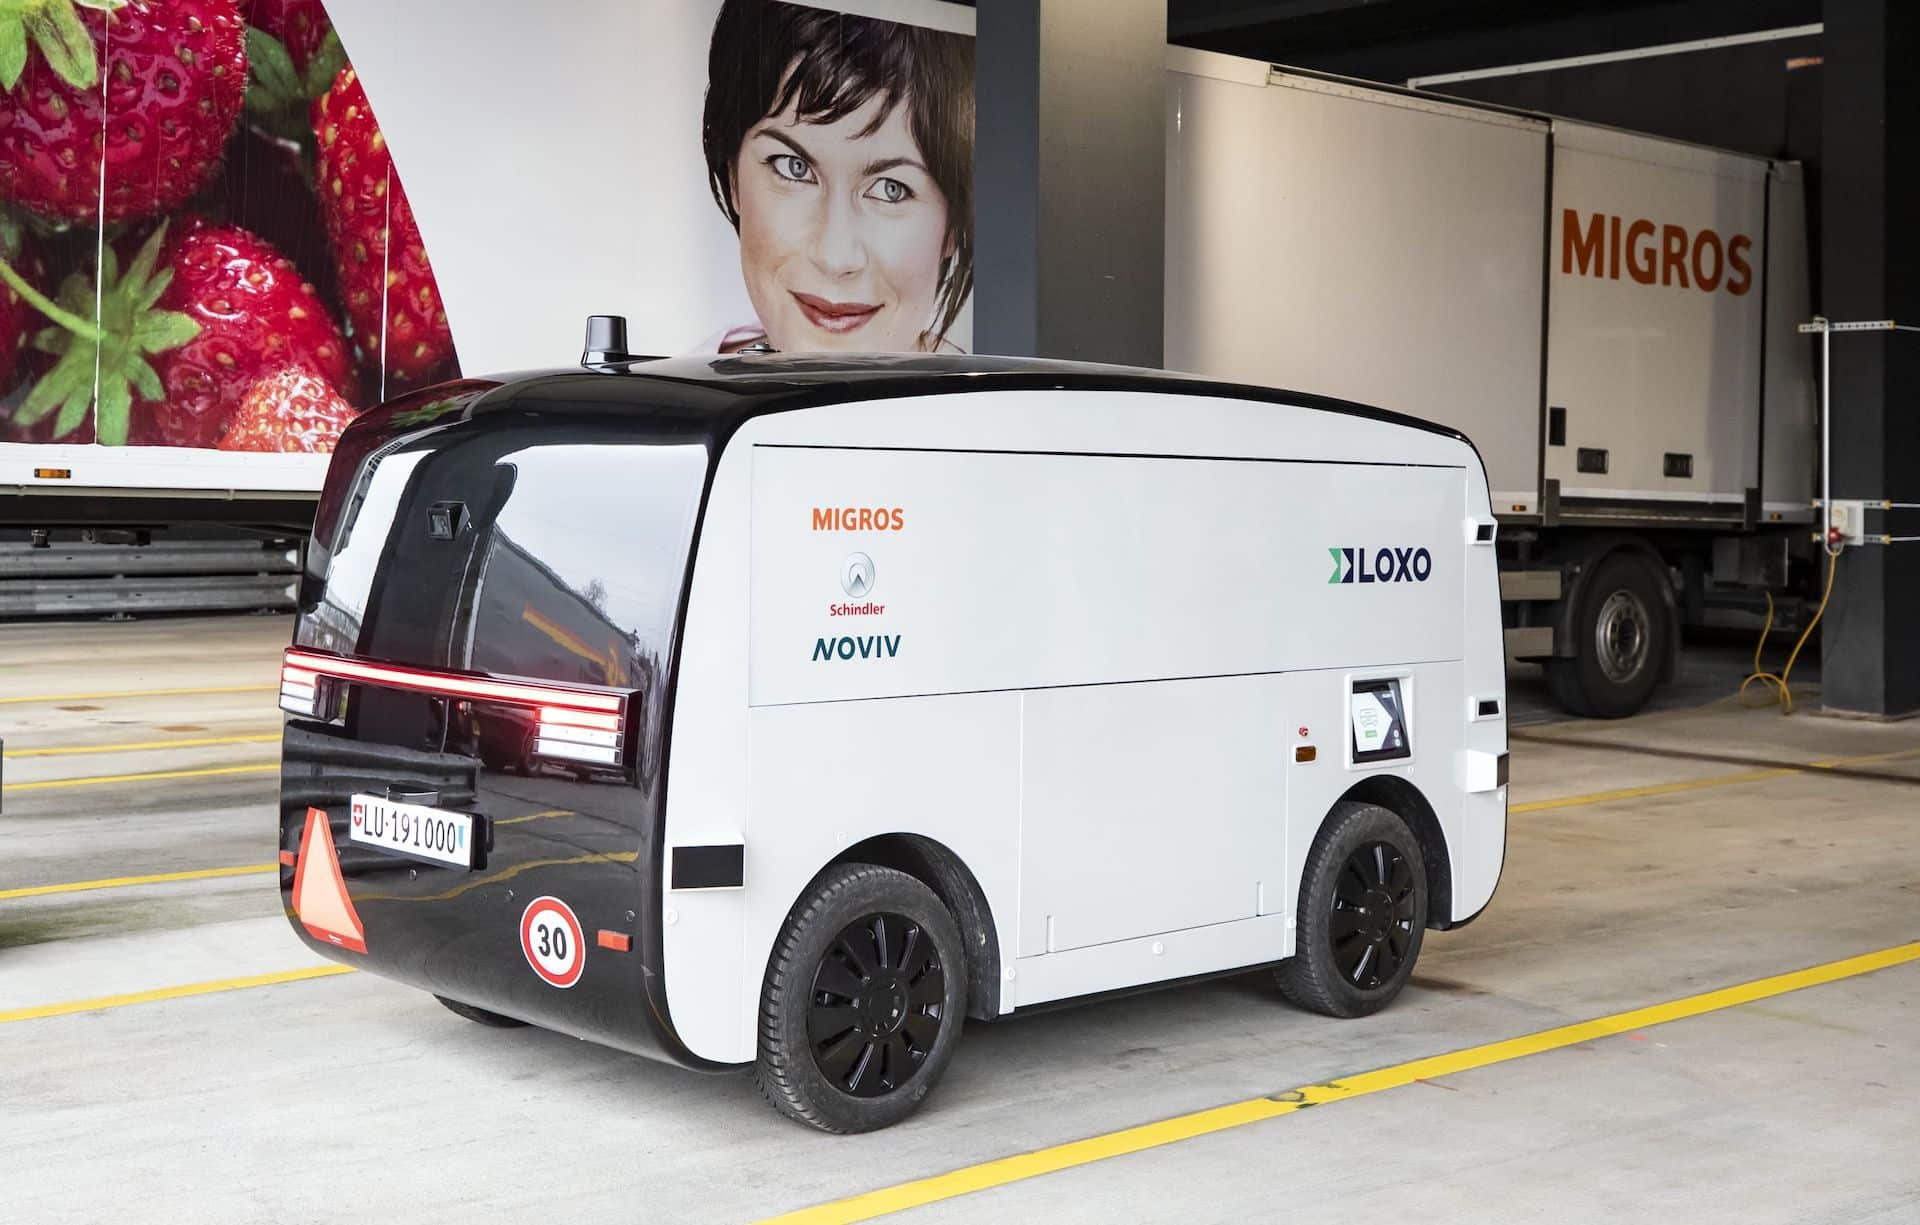 Innoviz and LOXO Enhance Strategic Partnership, Deploying LiDAR Technology in Zero-Emission Autonomous Delivery Vehicles